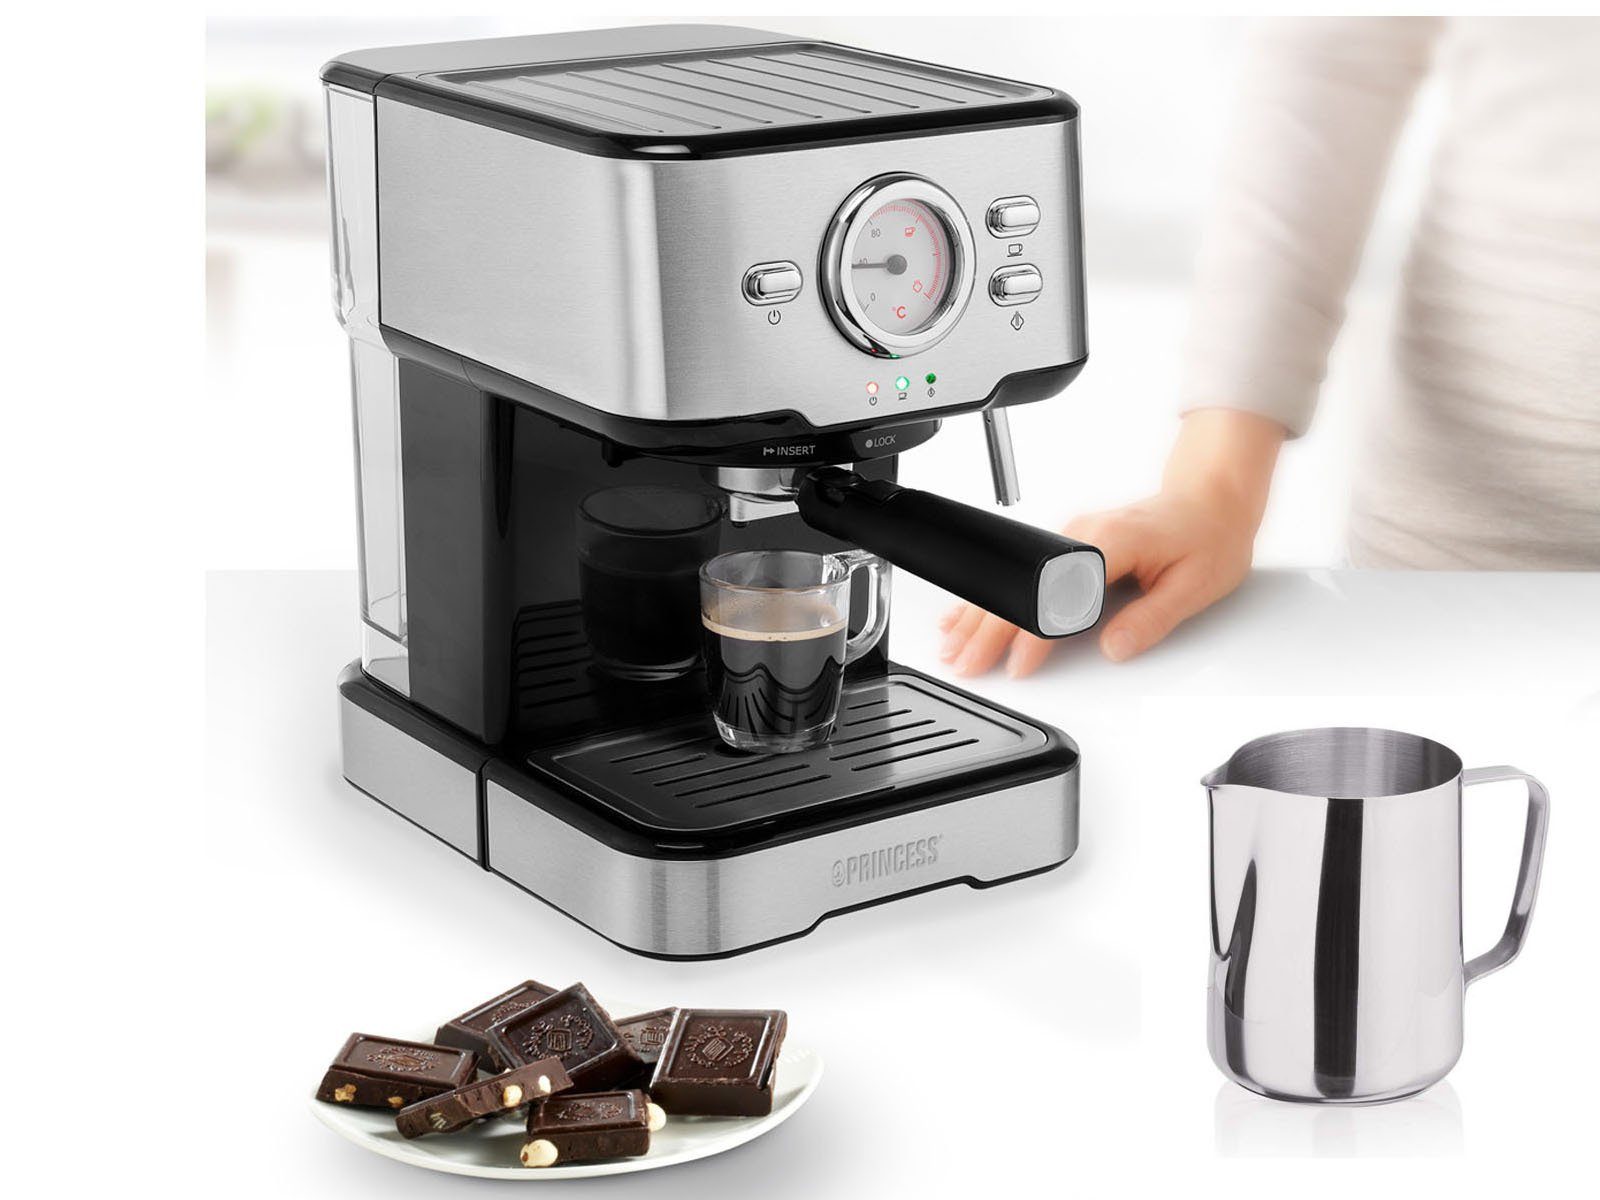 PRINCESS Siebträgermaschine, italienische Siebdruck Kaffee & Espresso- Maschine mit Milchaufschäumer für Latte Macchiato & Cappuccino, 2in1 auch  für Kapseln geeignet